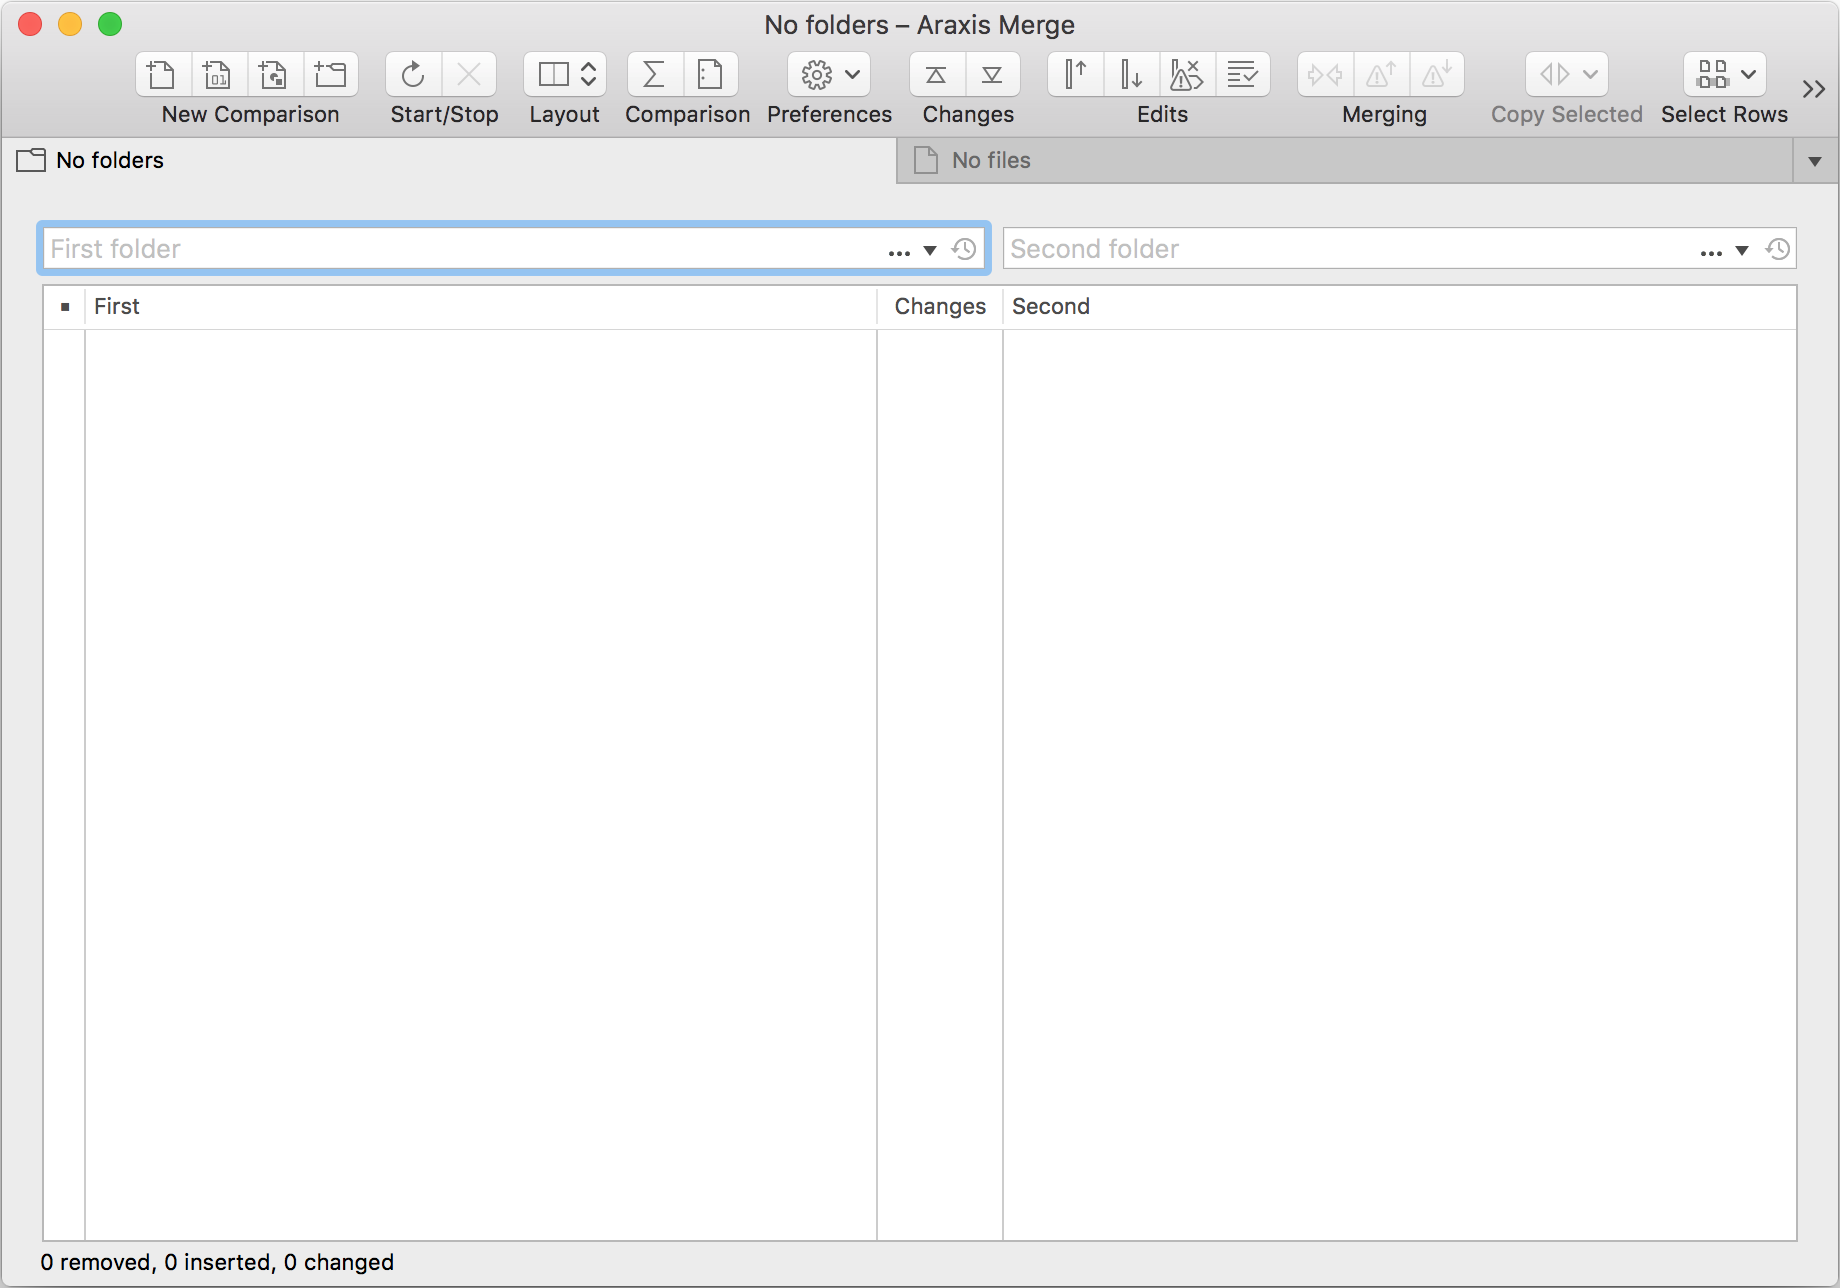 Folder comparison window without file comparison